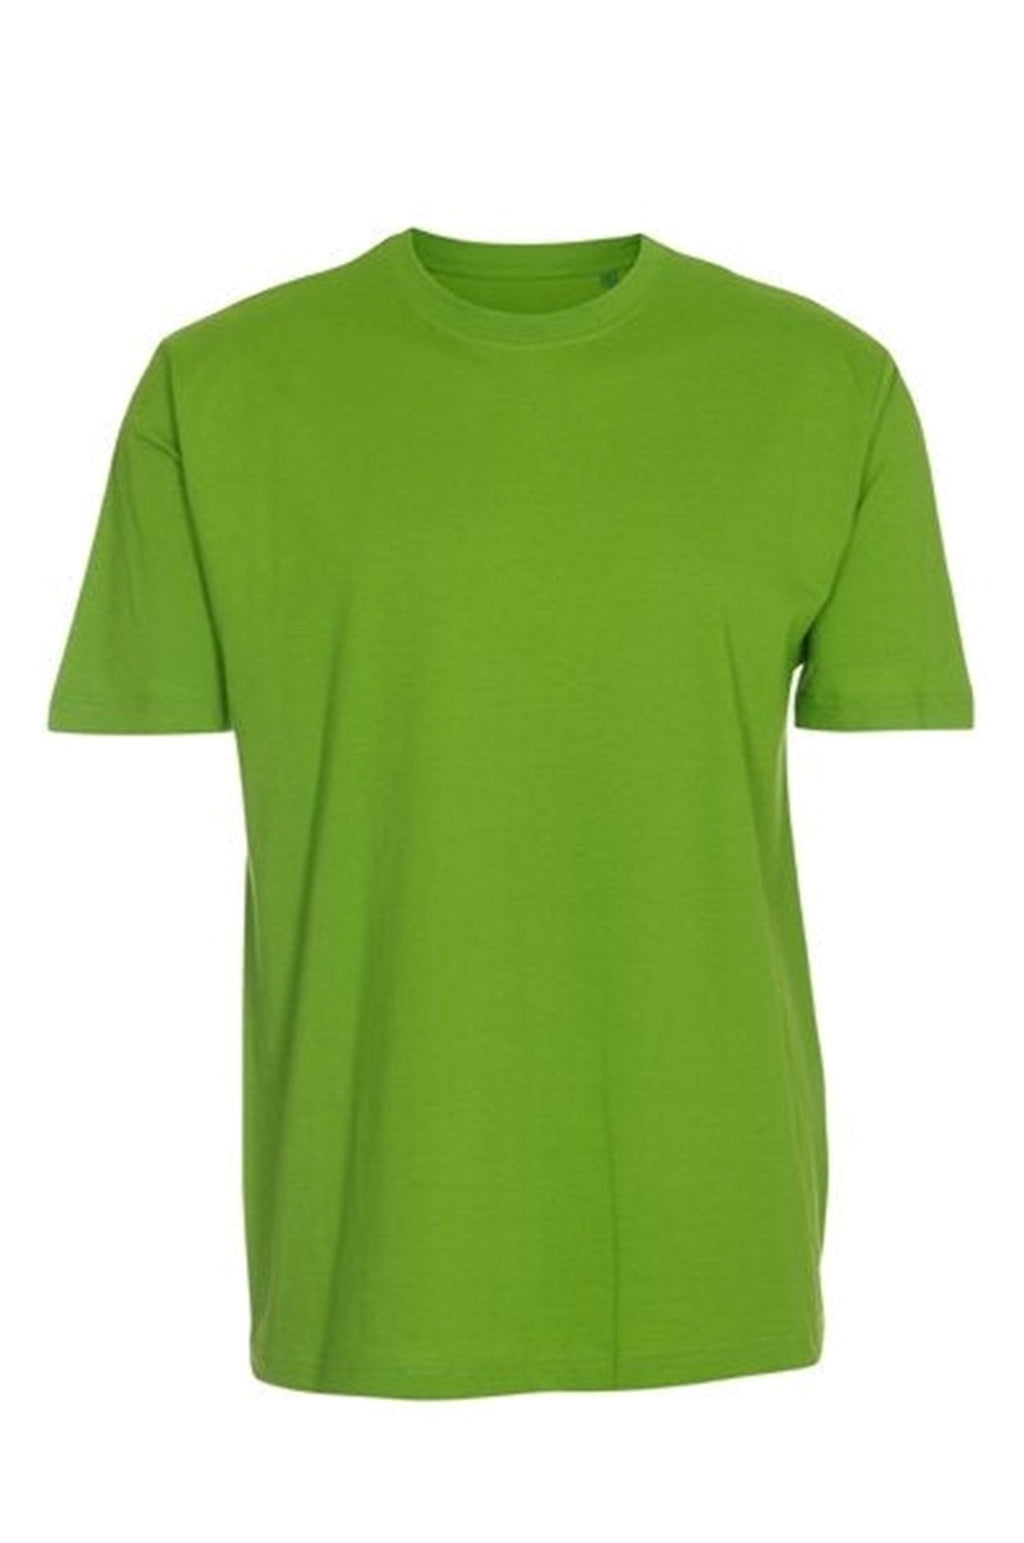 Predimenzionirana majica - Lime zelena